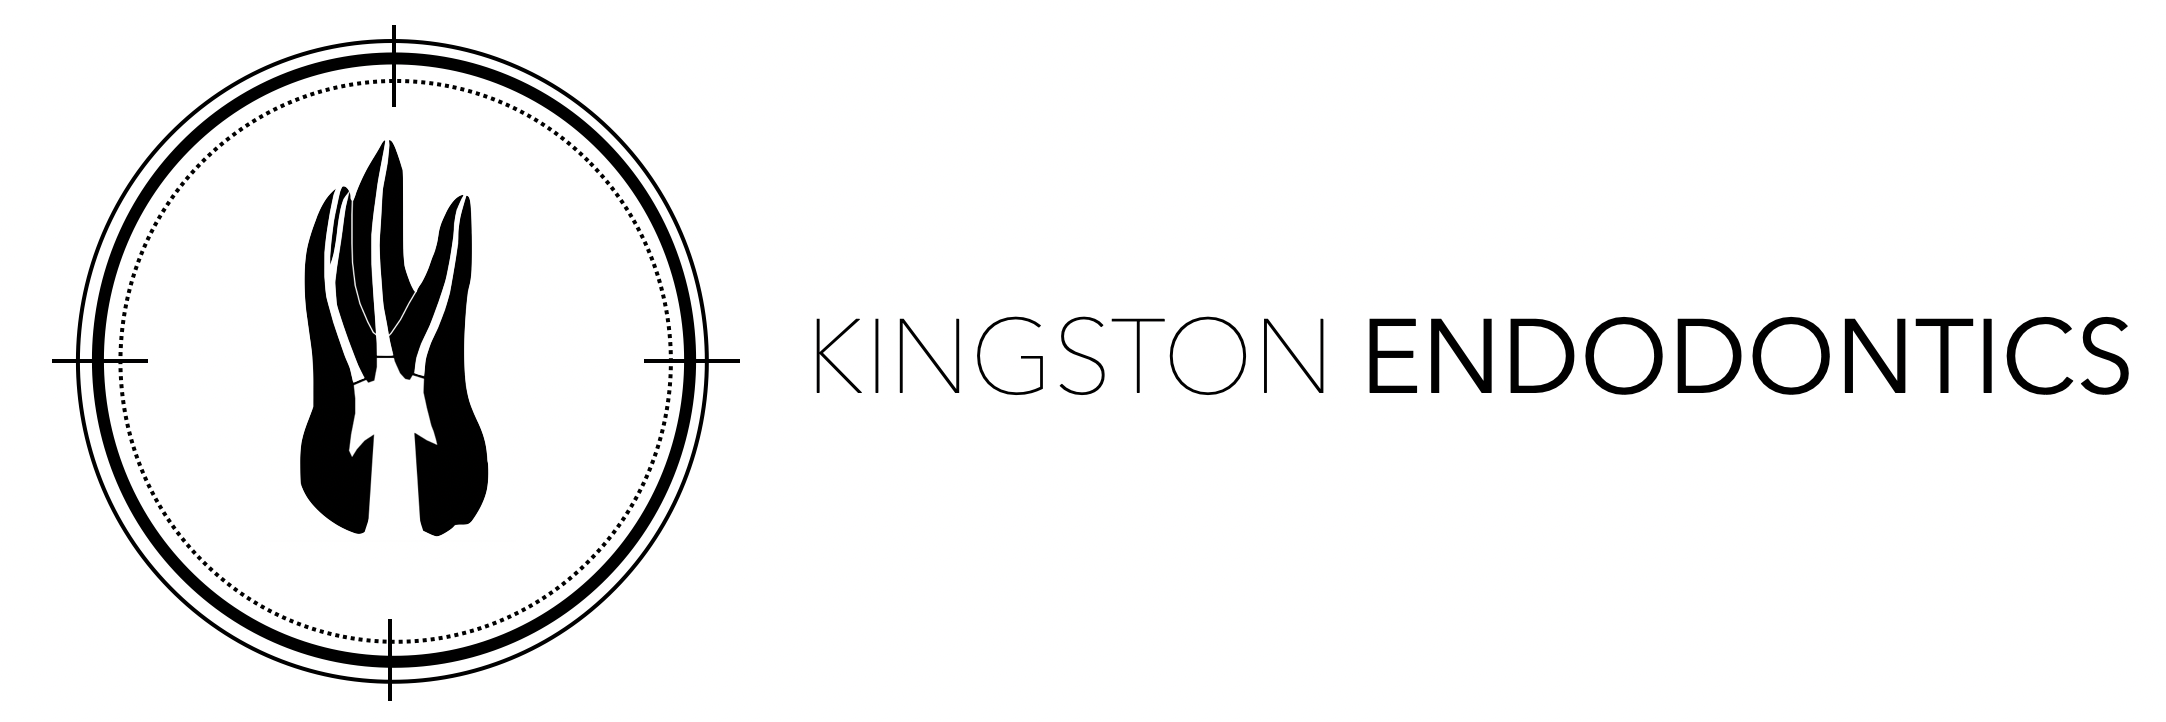 Kingston Endodontics